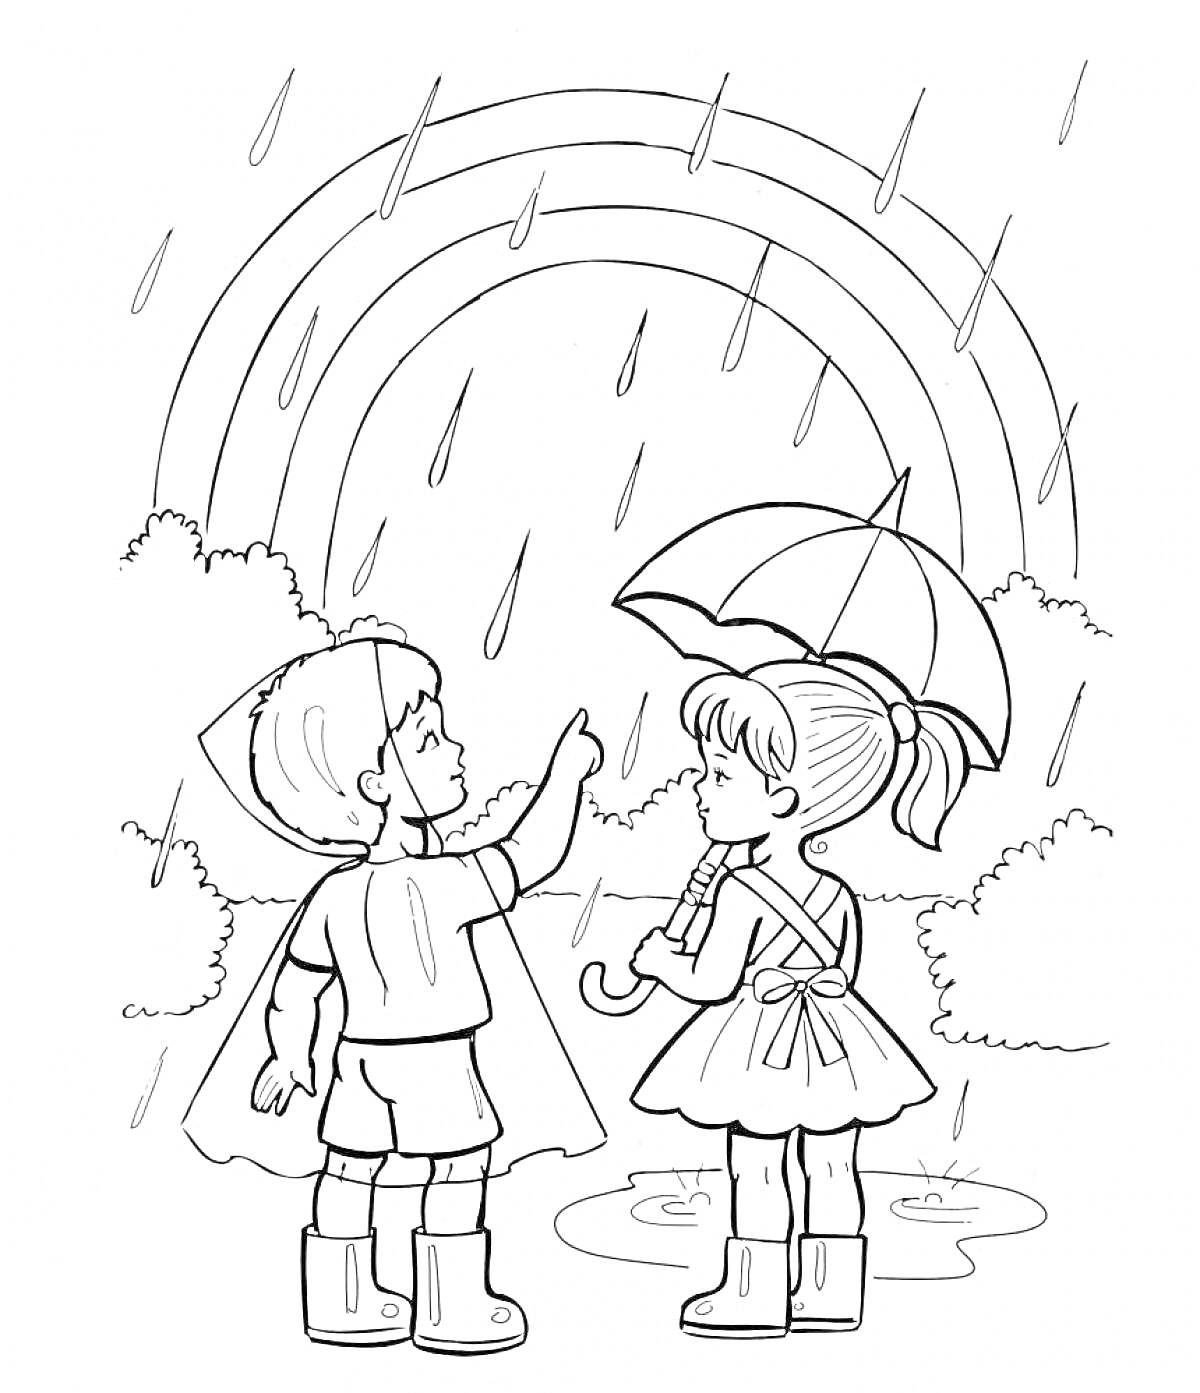 Дети под дождем, стоящие перед радугой, с зонтом и плащом, в резиновых сапогах